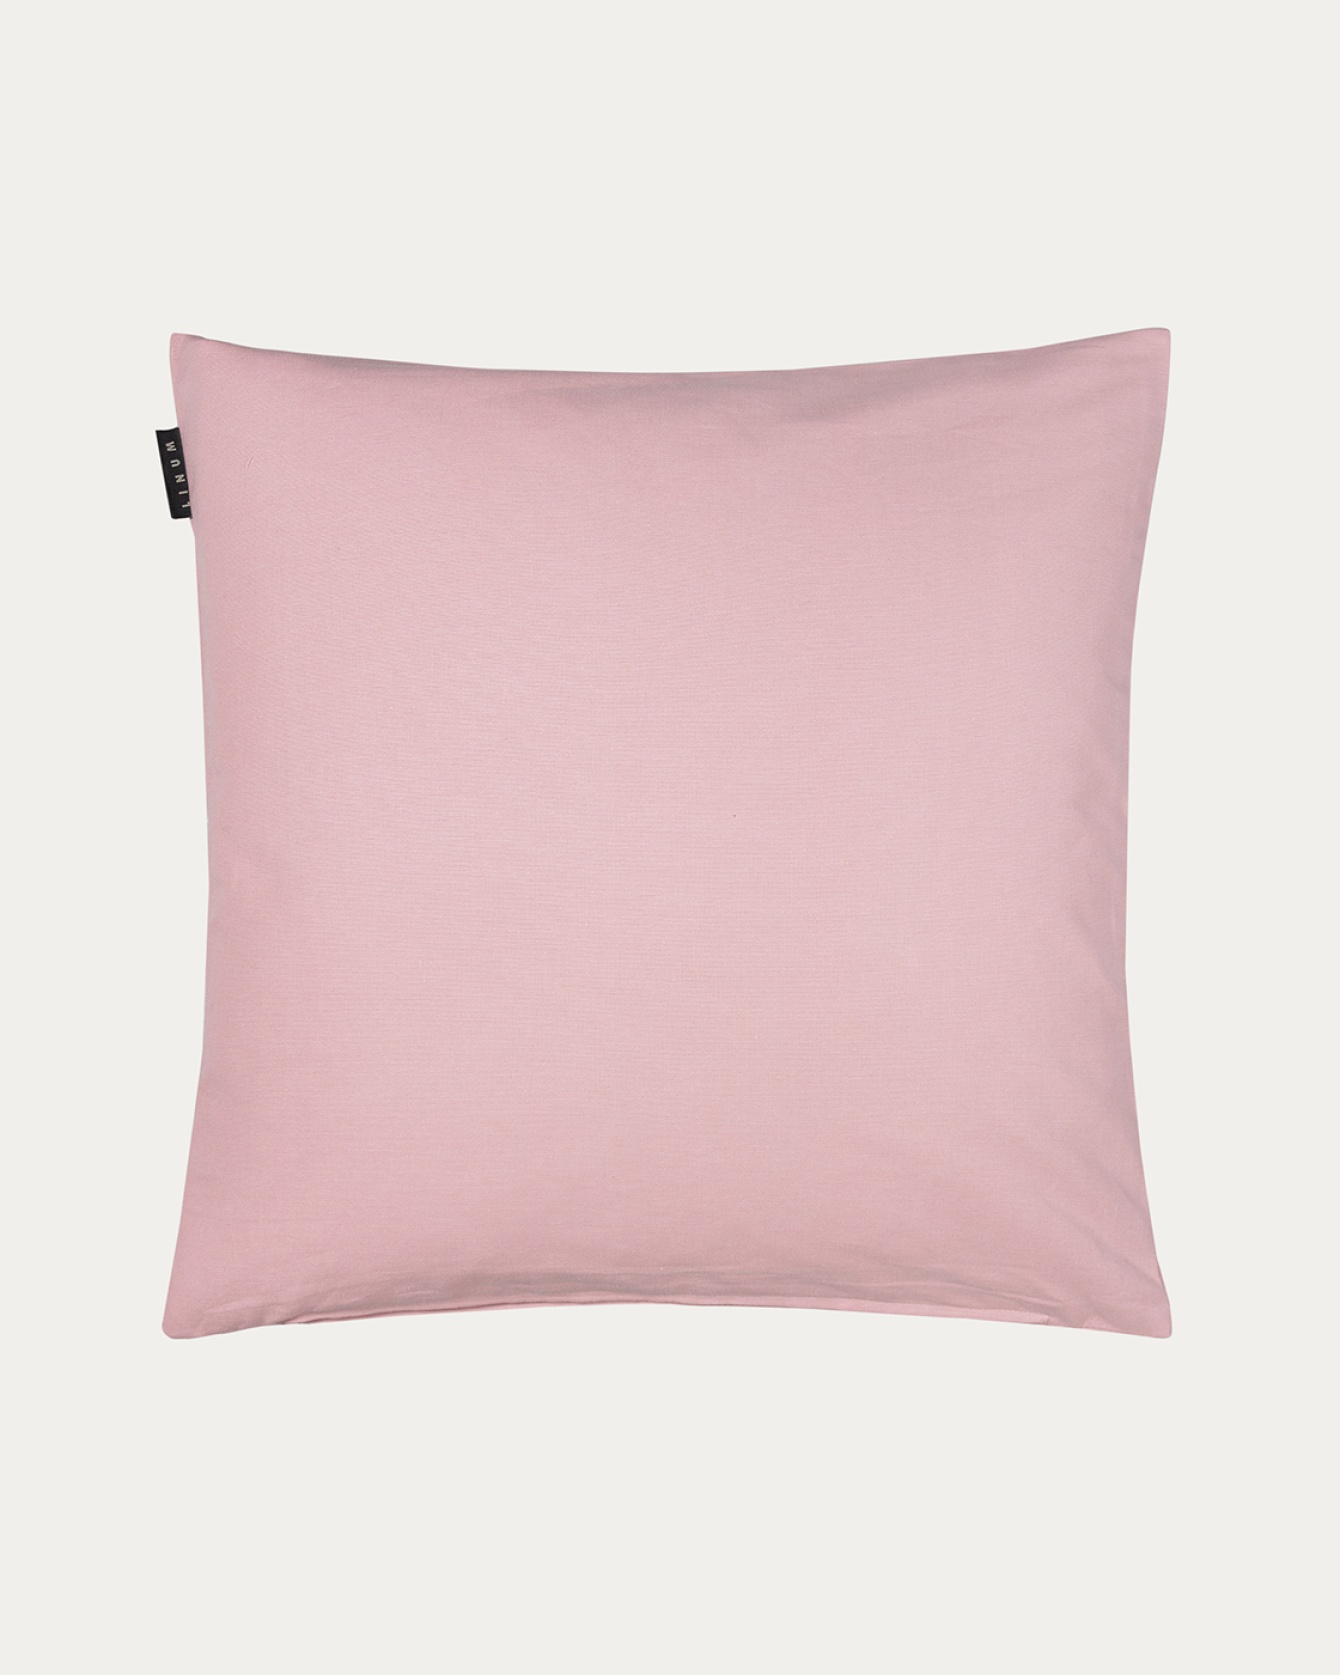 Image du produit housse de coussin ANNABELL rose poudré en coton doux de LINUM DESIGN. Taille 50 x 50 cm.